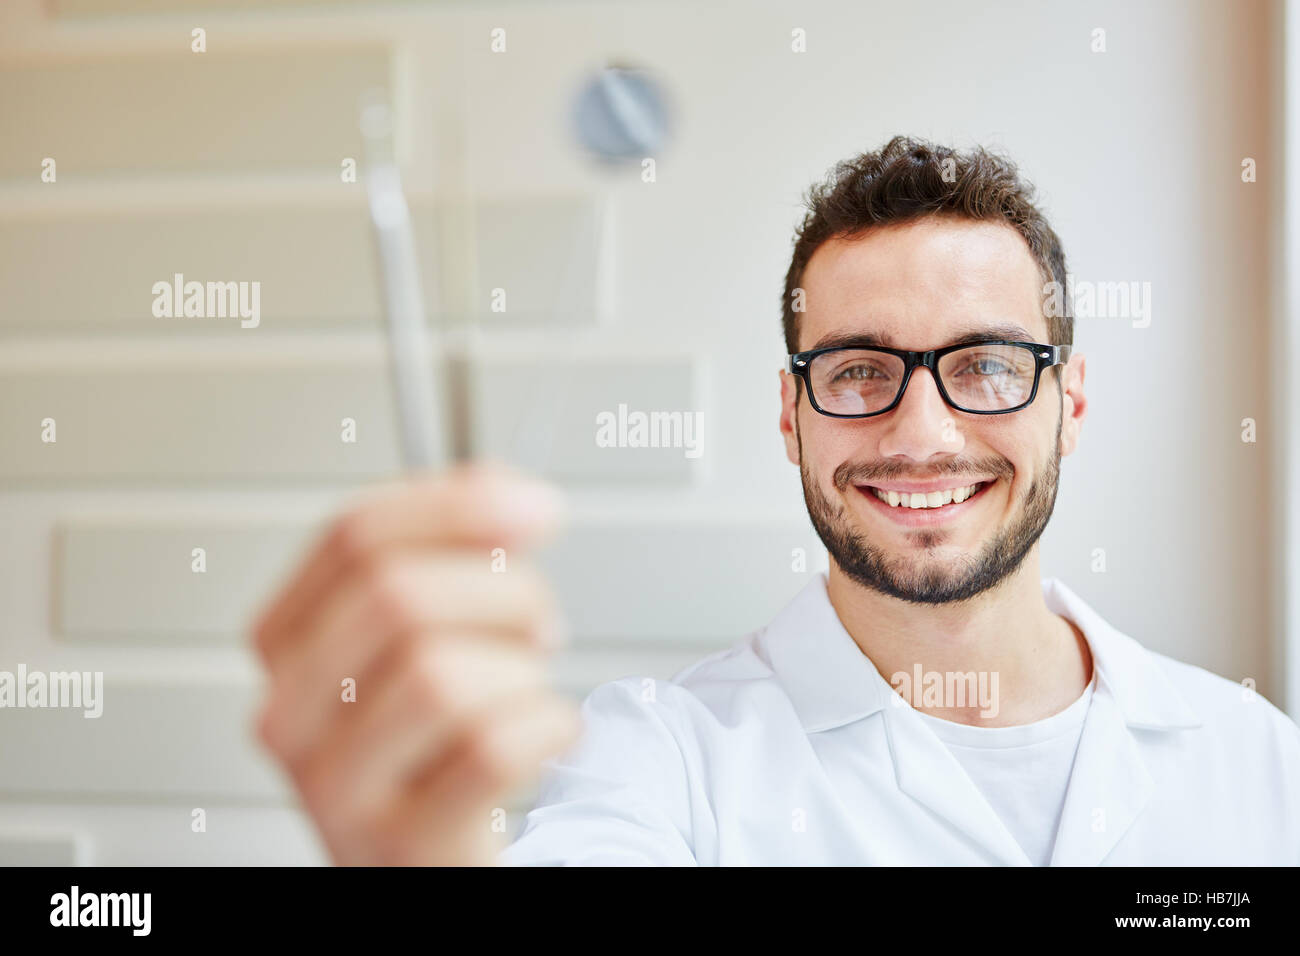 El hombre como enfermera dental la celebración de diferentes herramientas en su mano Foto de stock